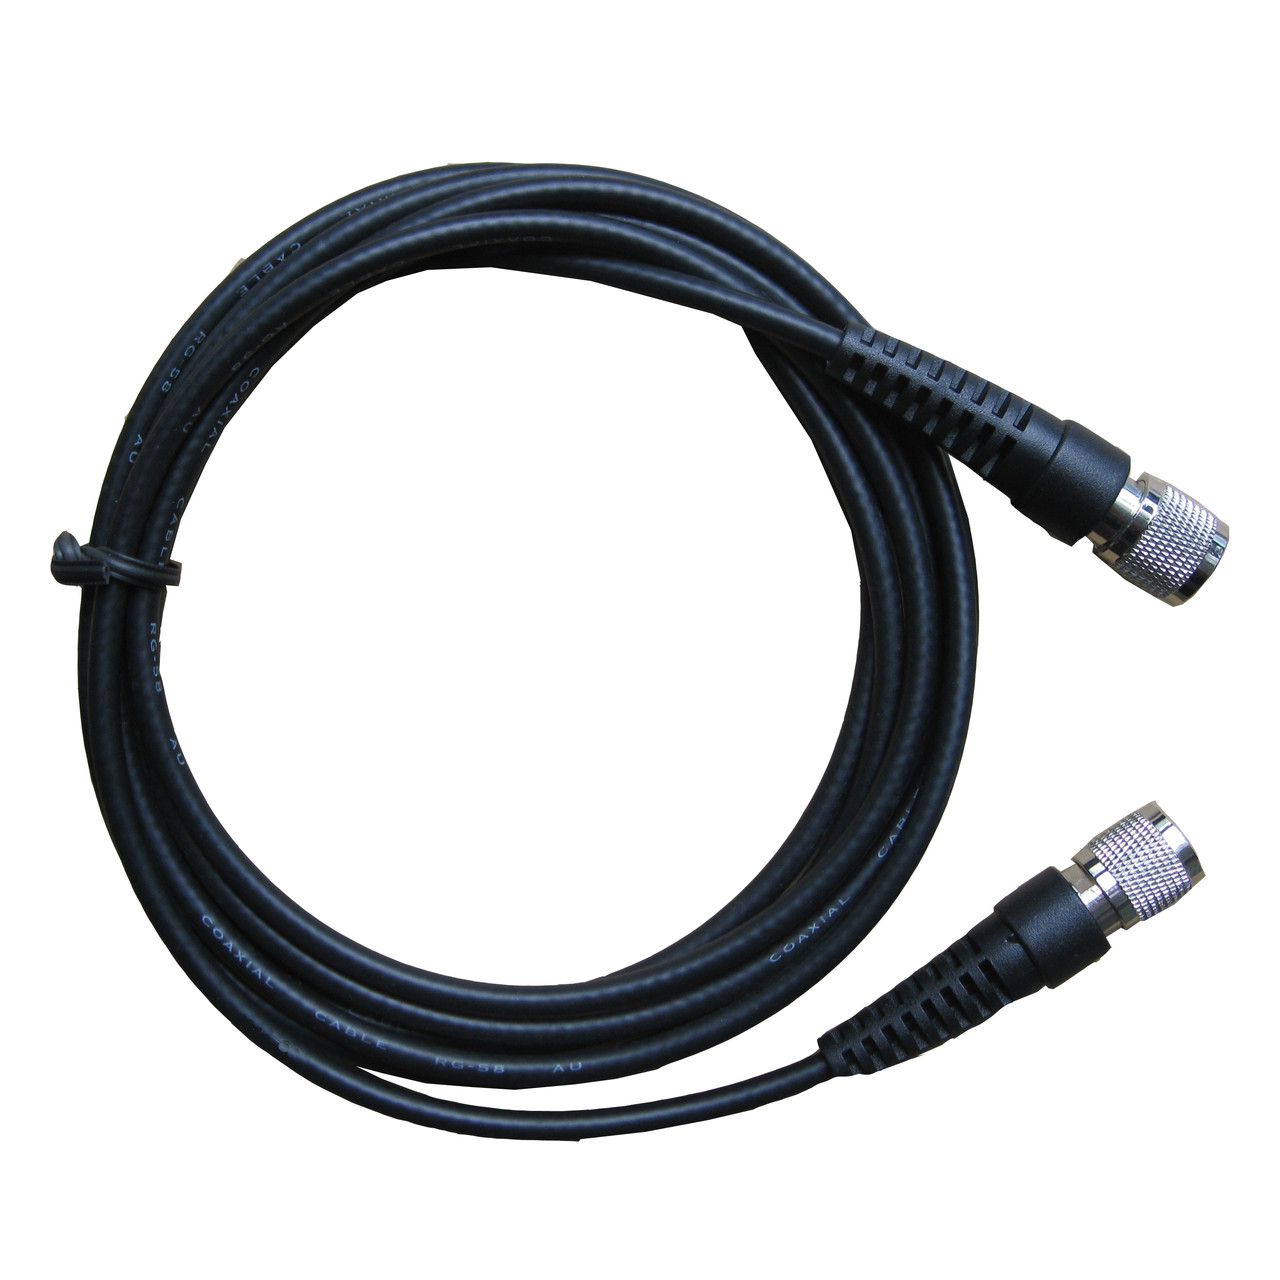 Антенний кабель 1,2 м GEV141 для GPS приймачів Leica